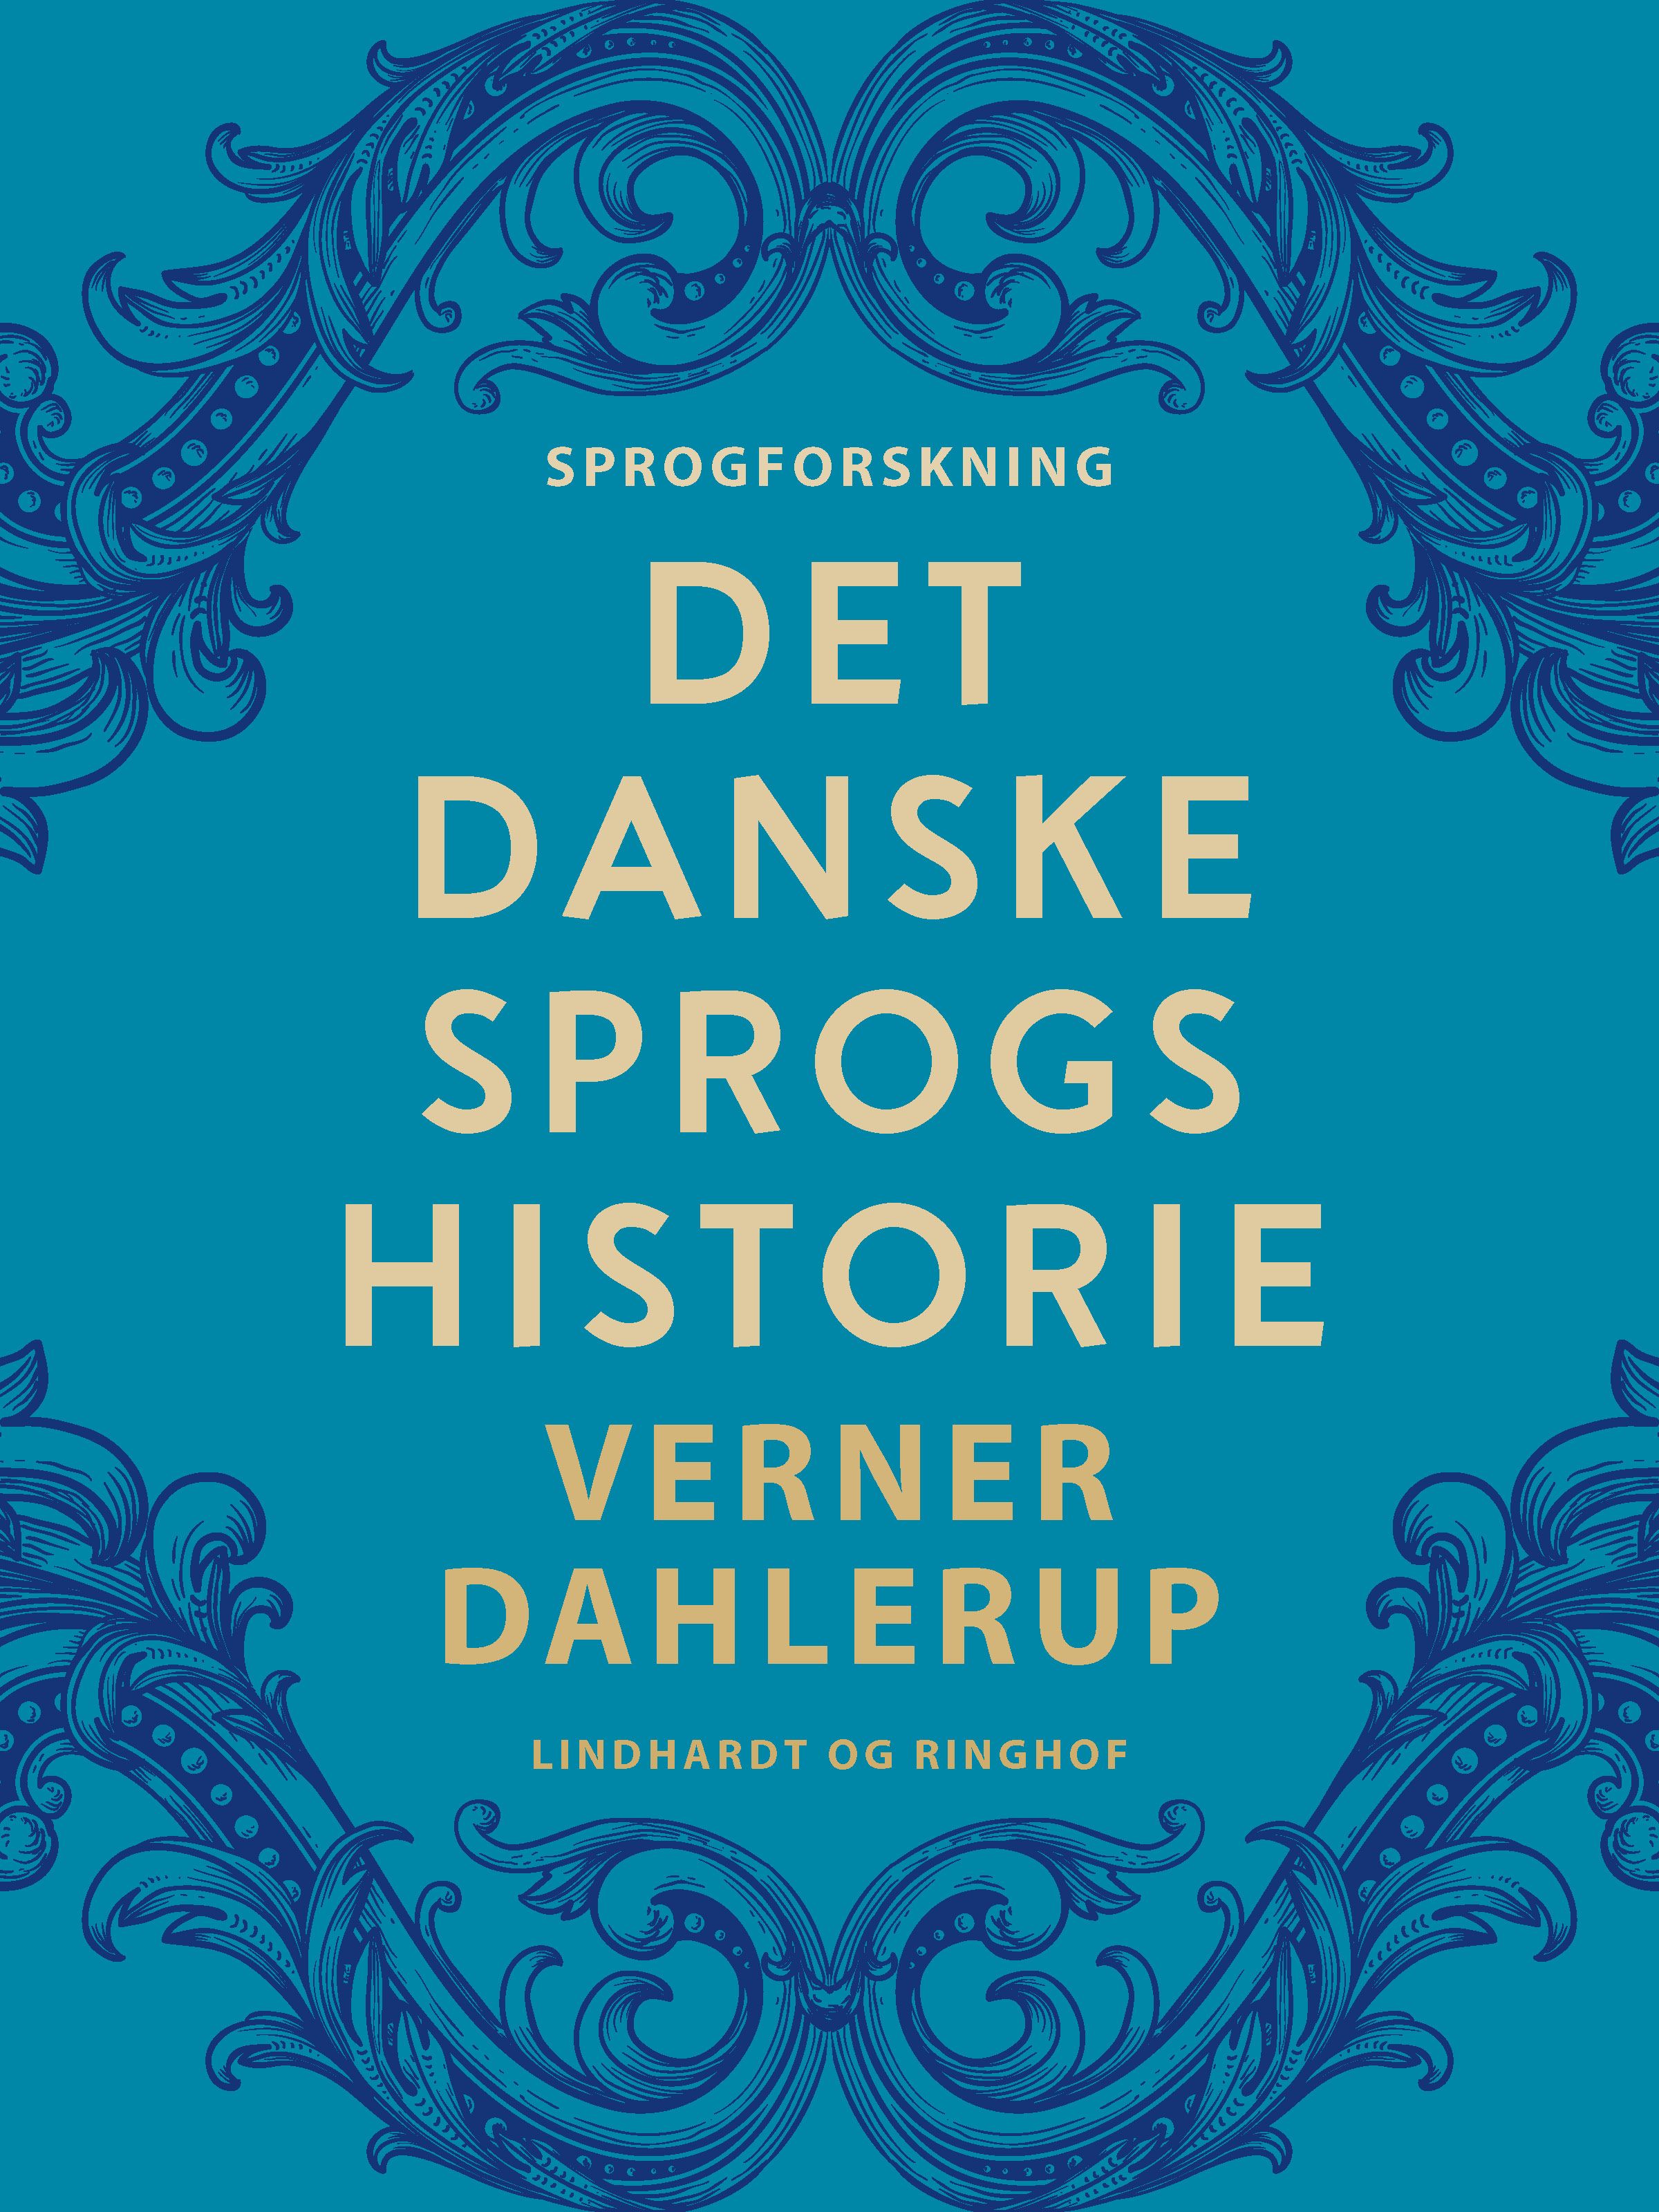 Det danske sprogs historie, eBook by Verner Dahlerup